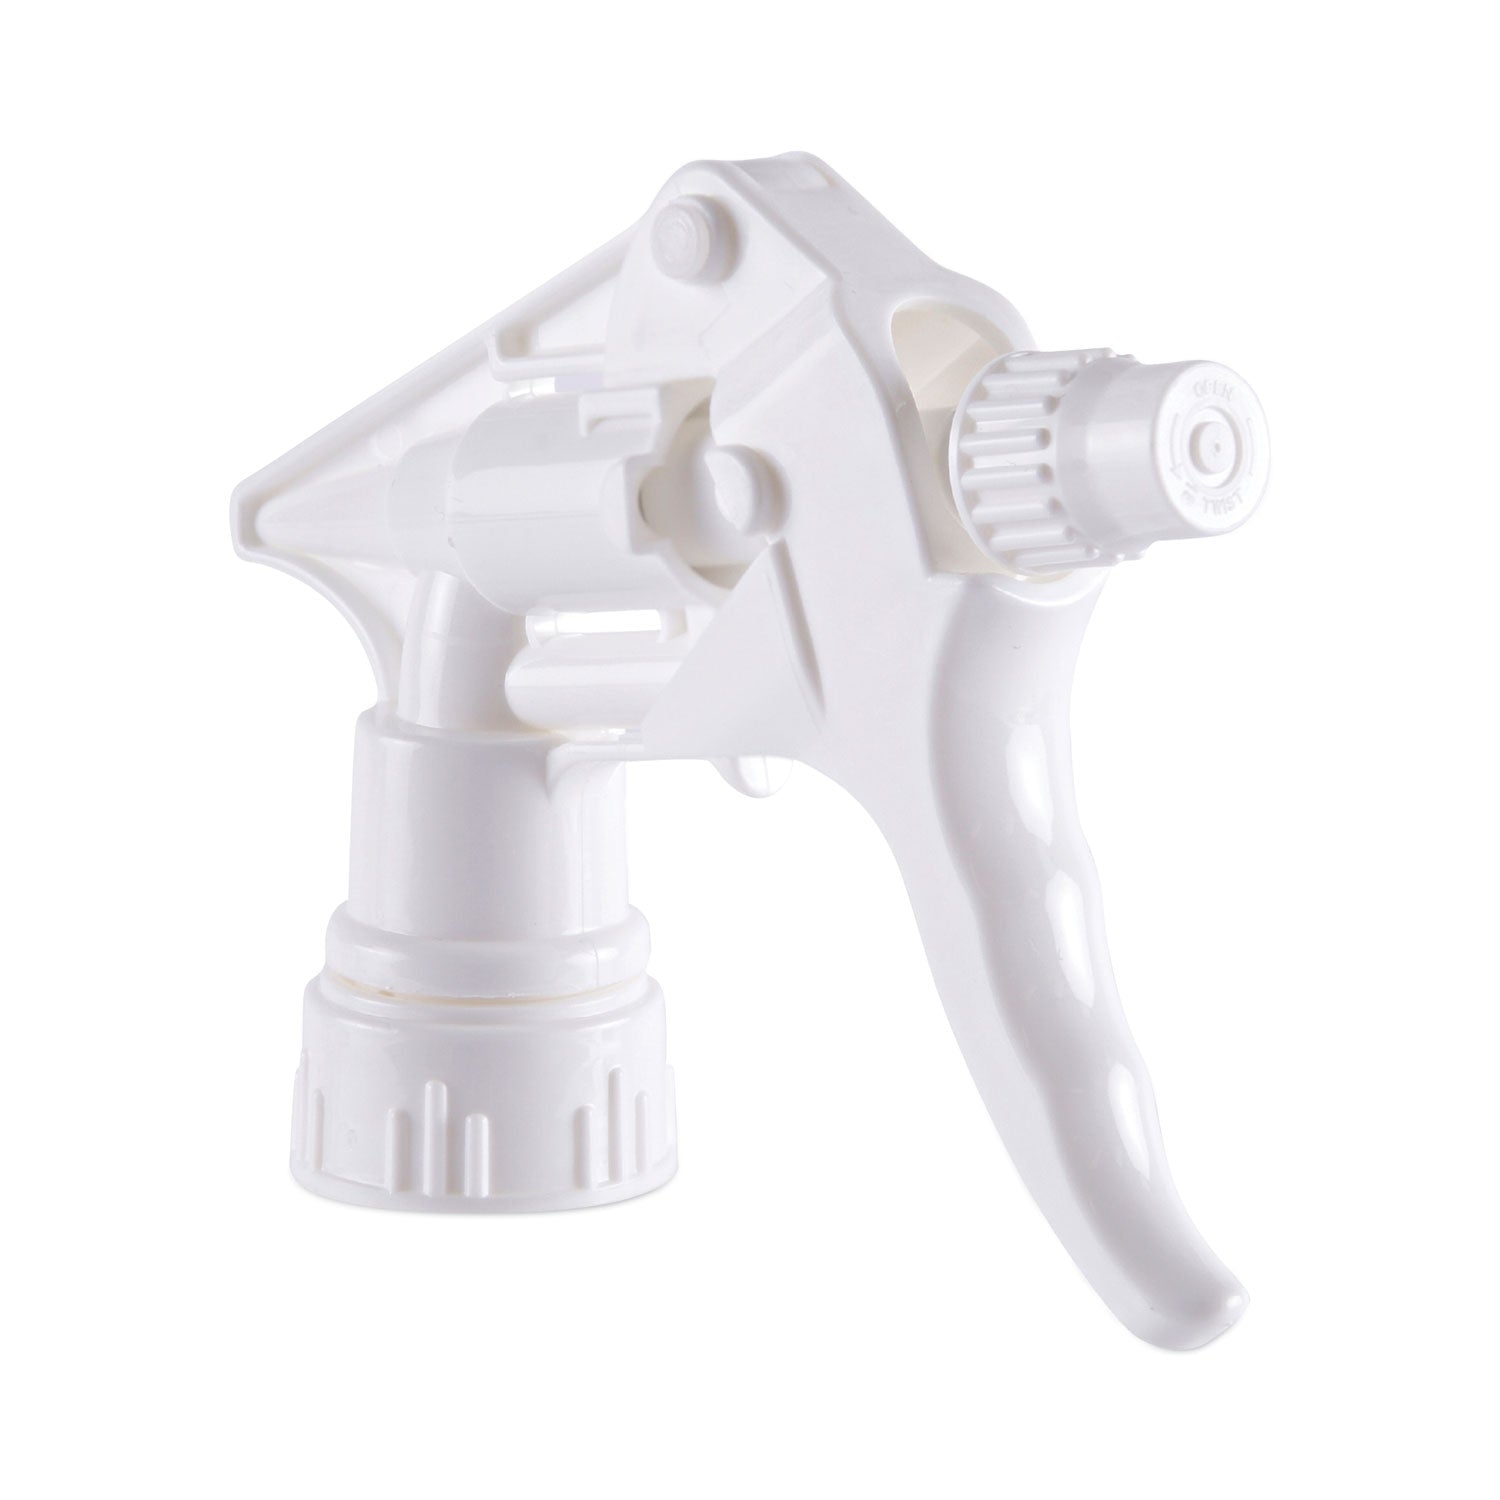 Trigger Sprayer 250, 8" Tube, Fits 16-24 oz Bottles, White, 24/Carton - 